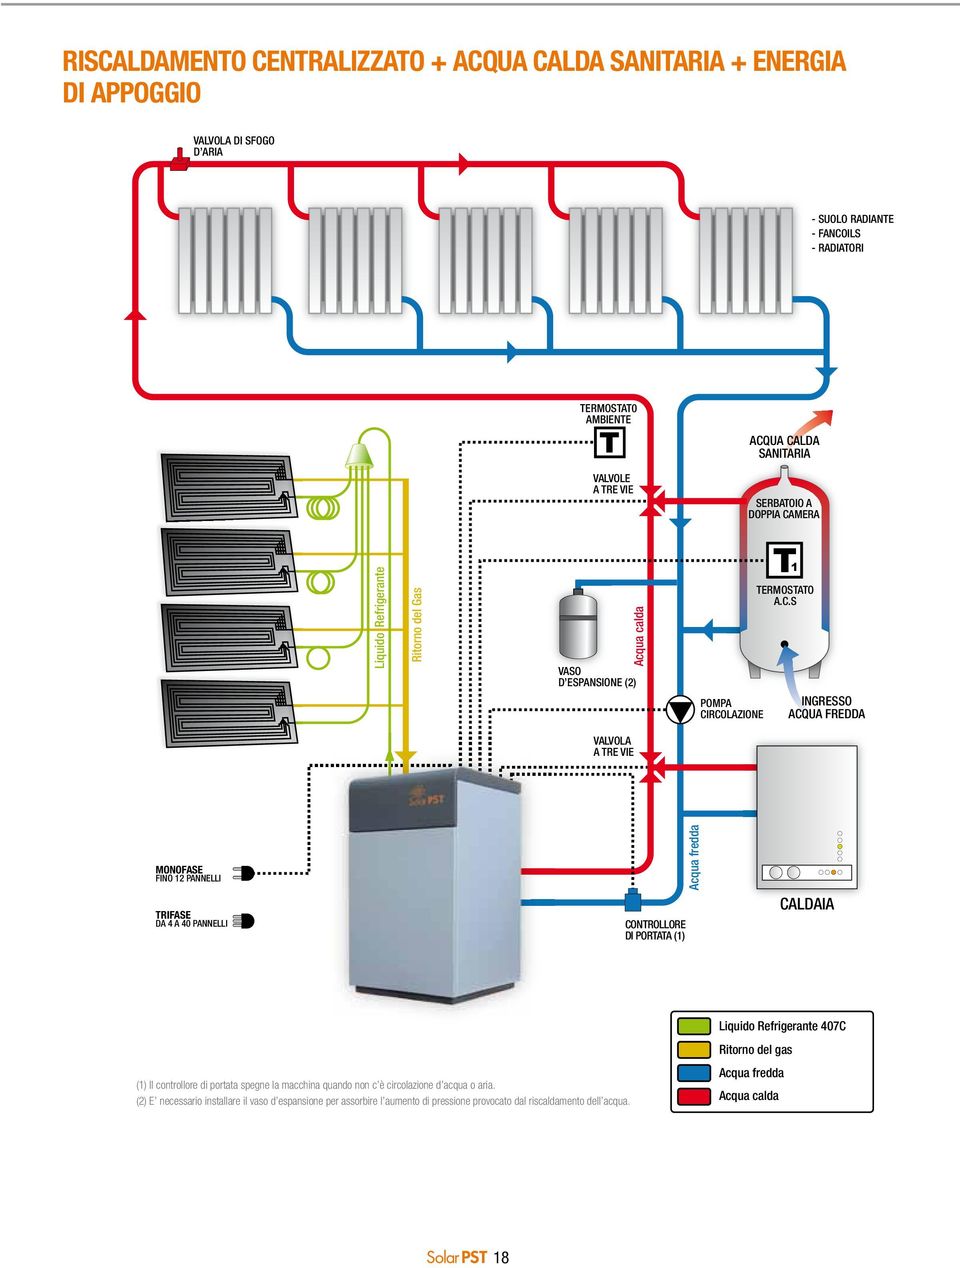 MERA Liquido Refrigerante Ritorno del Gas Acqua calda VASO D ESPANSIONE (2) POMPA CI